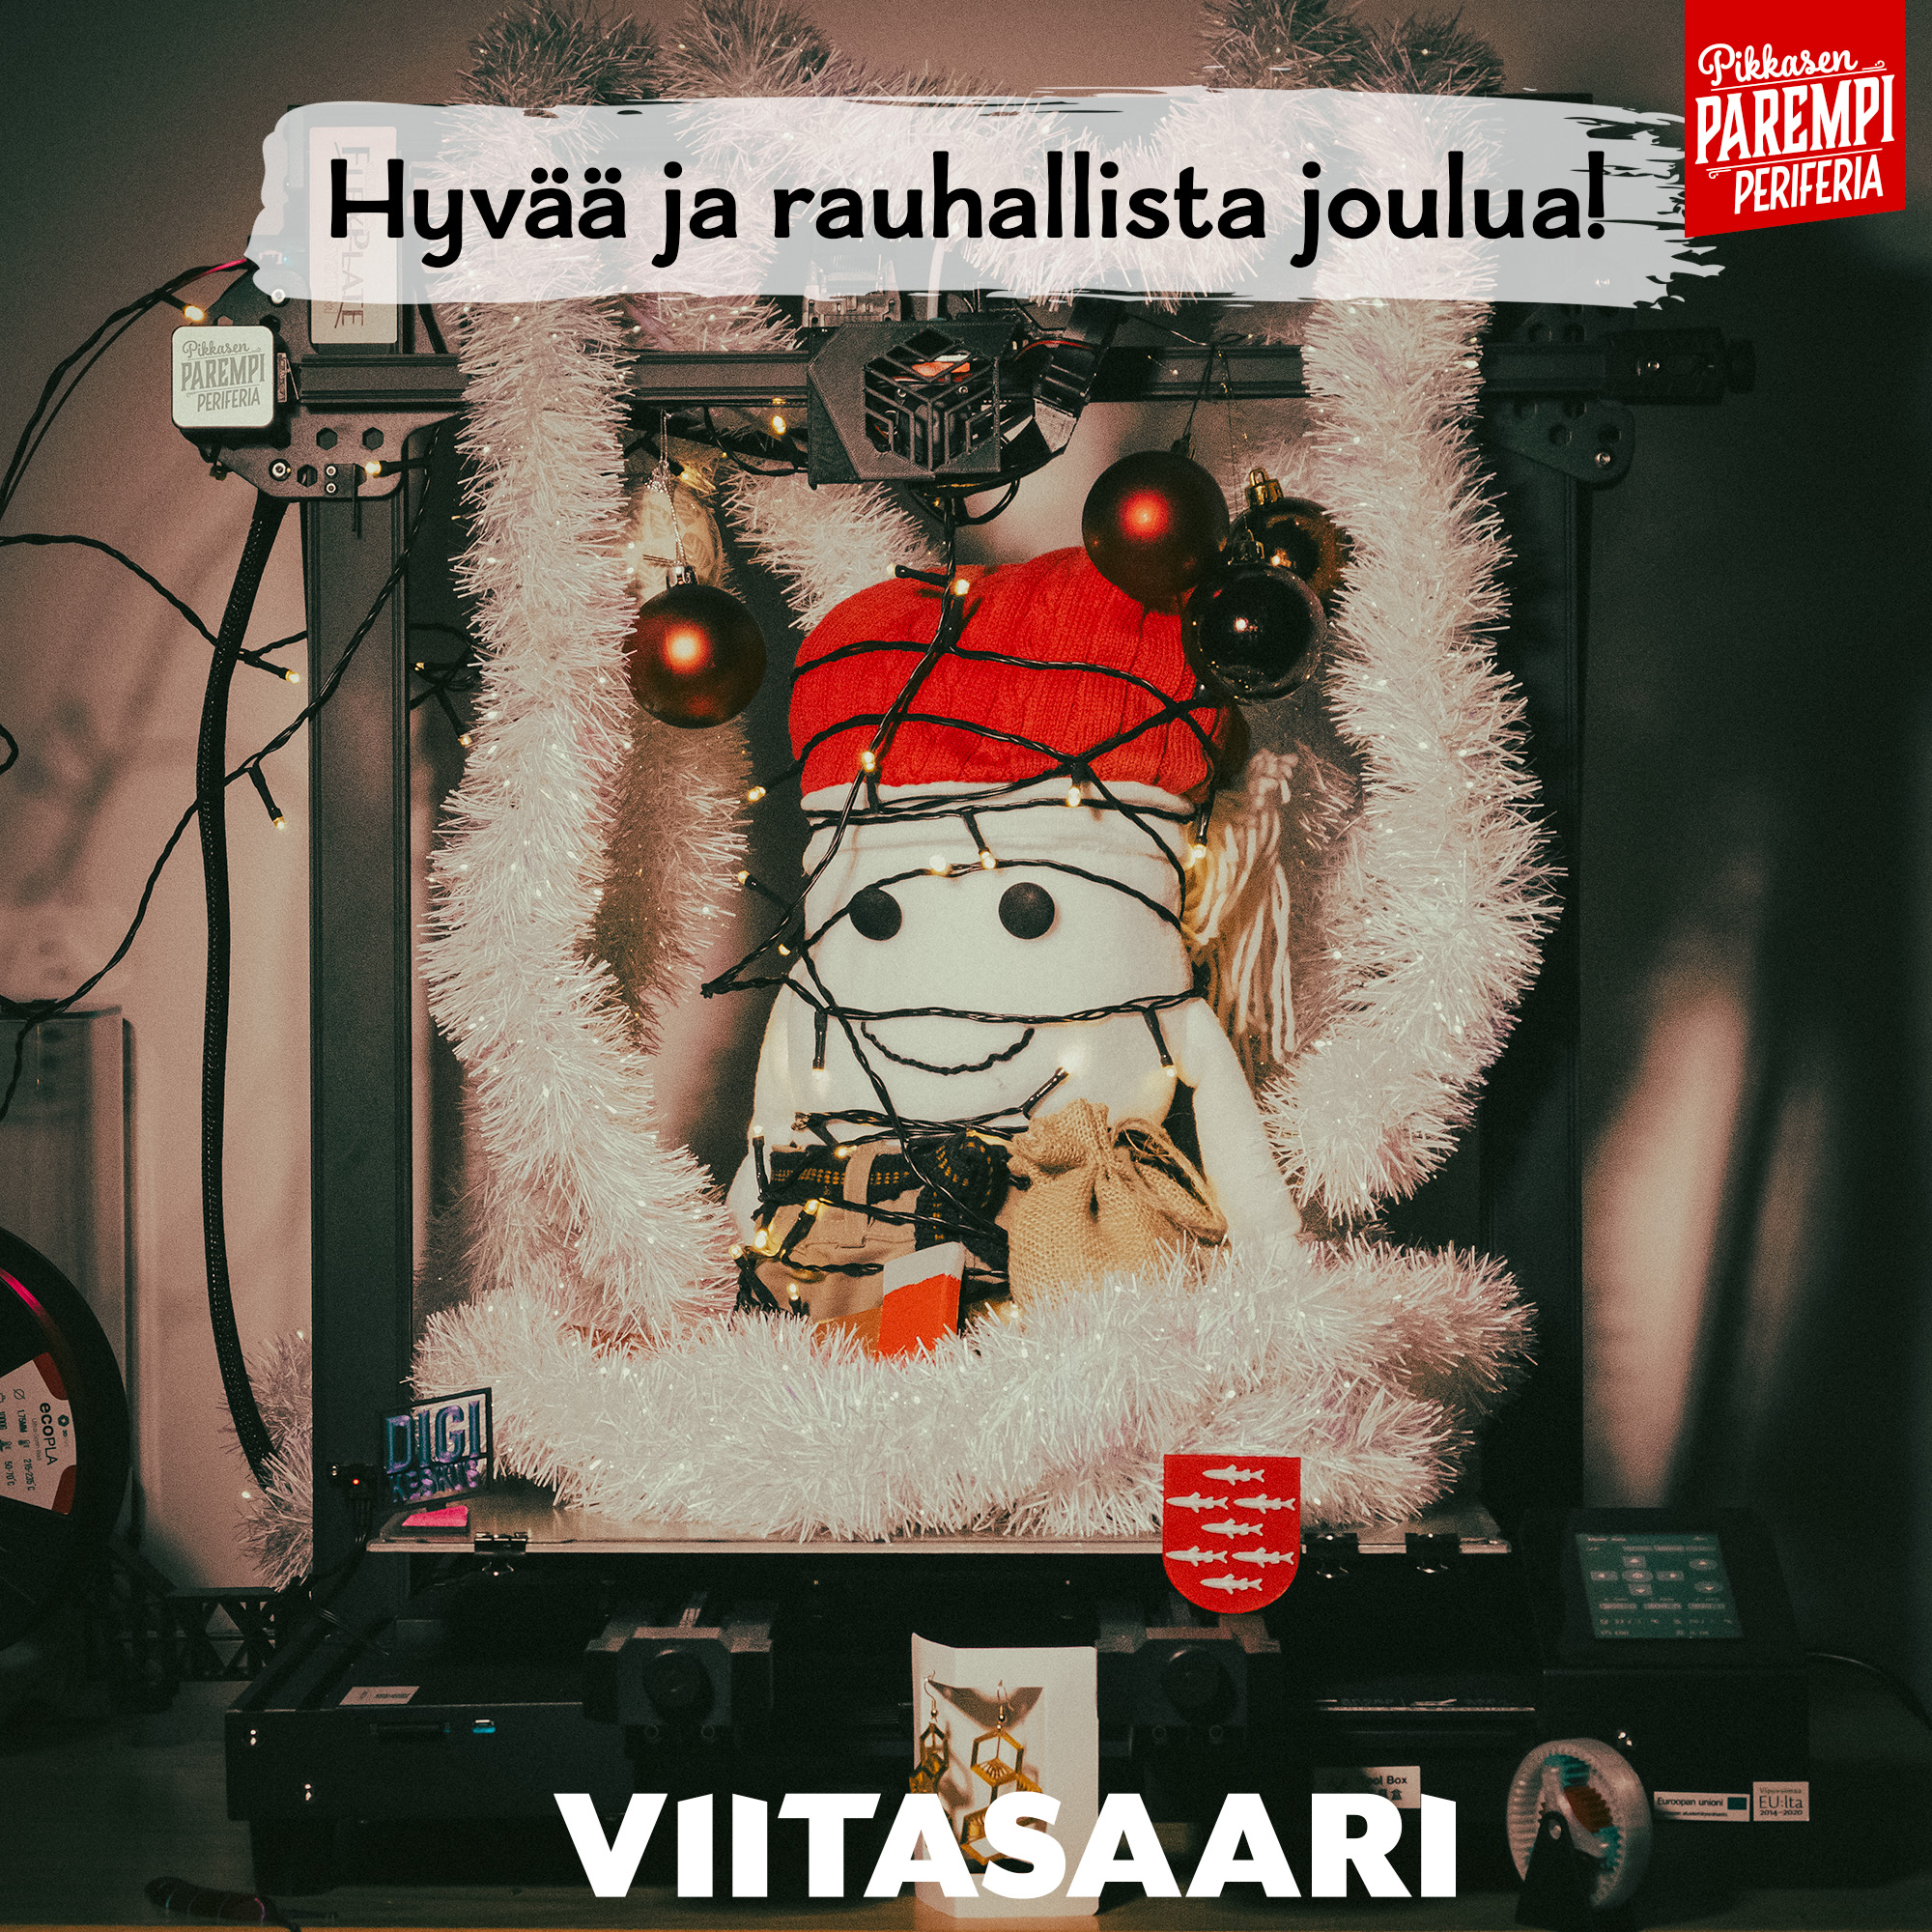 Pölkkypää-pehmohahmo 3d-tulostimessa, jossa led-valoja ja jouluköynnöstä, teksti Hyvää ja rauhallista joulua sekä Viitasaari-logo